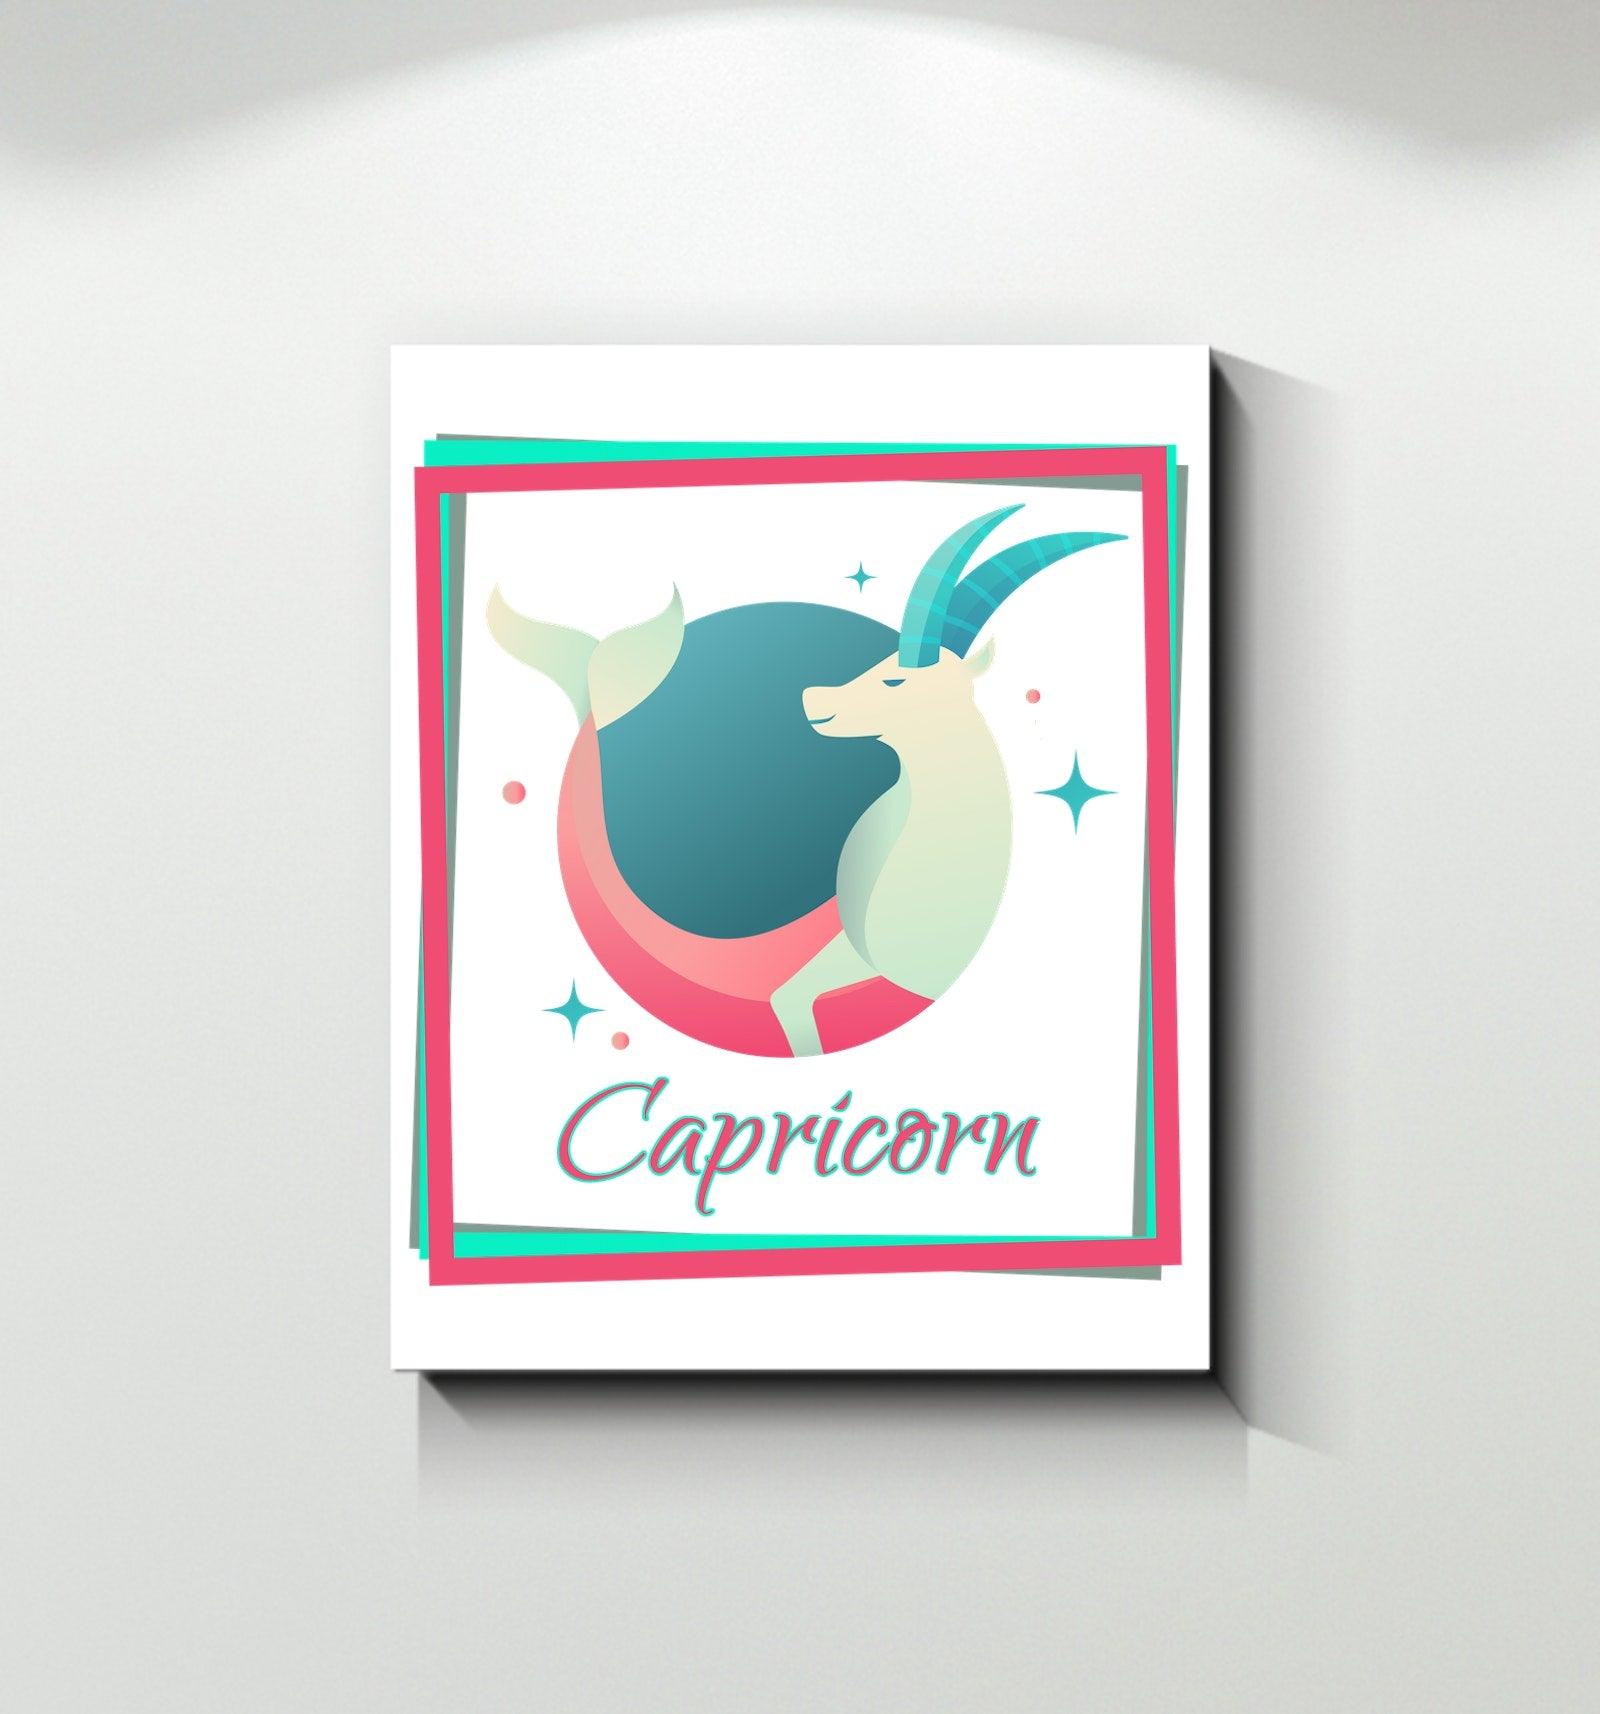 Capricorn Wrapped Canvas | Zodiac series 3 - Beyond T-shirts